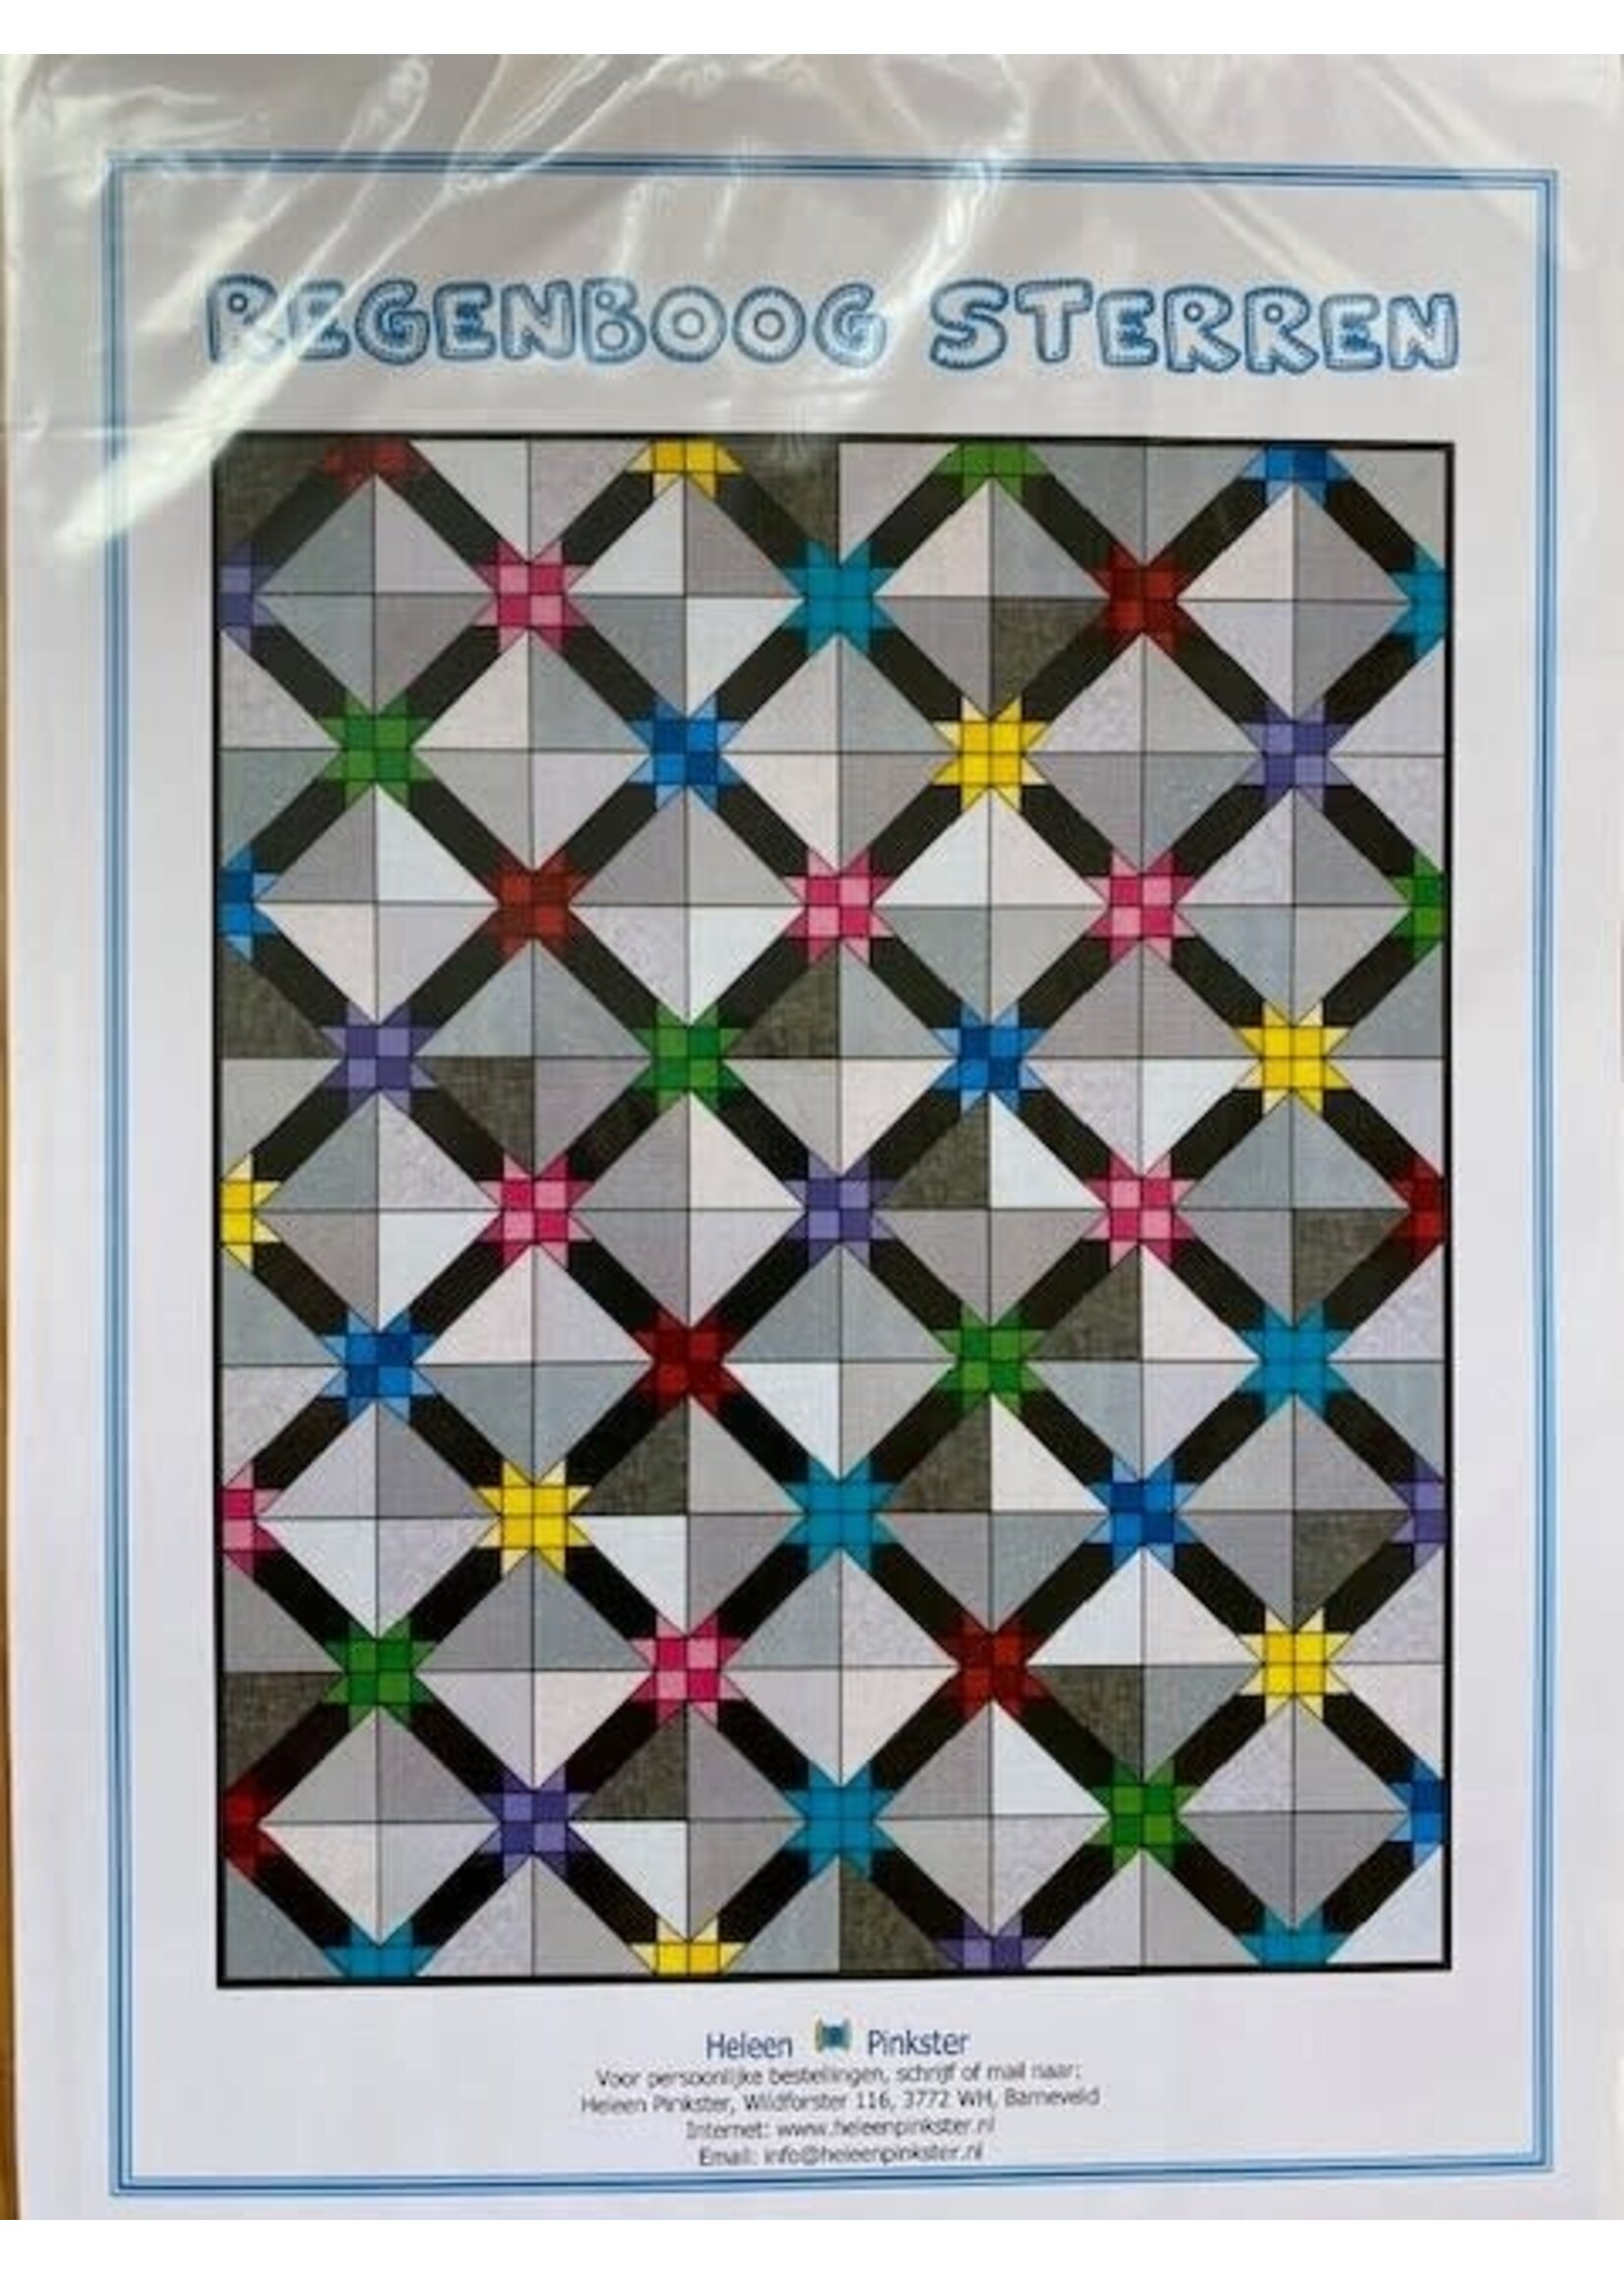 Heleen Pinkster Stofpakket en patroon - Regenboog Sterren - Quilt  - 160 cm x 200 cm